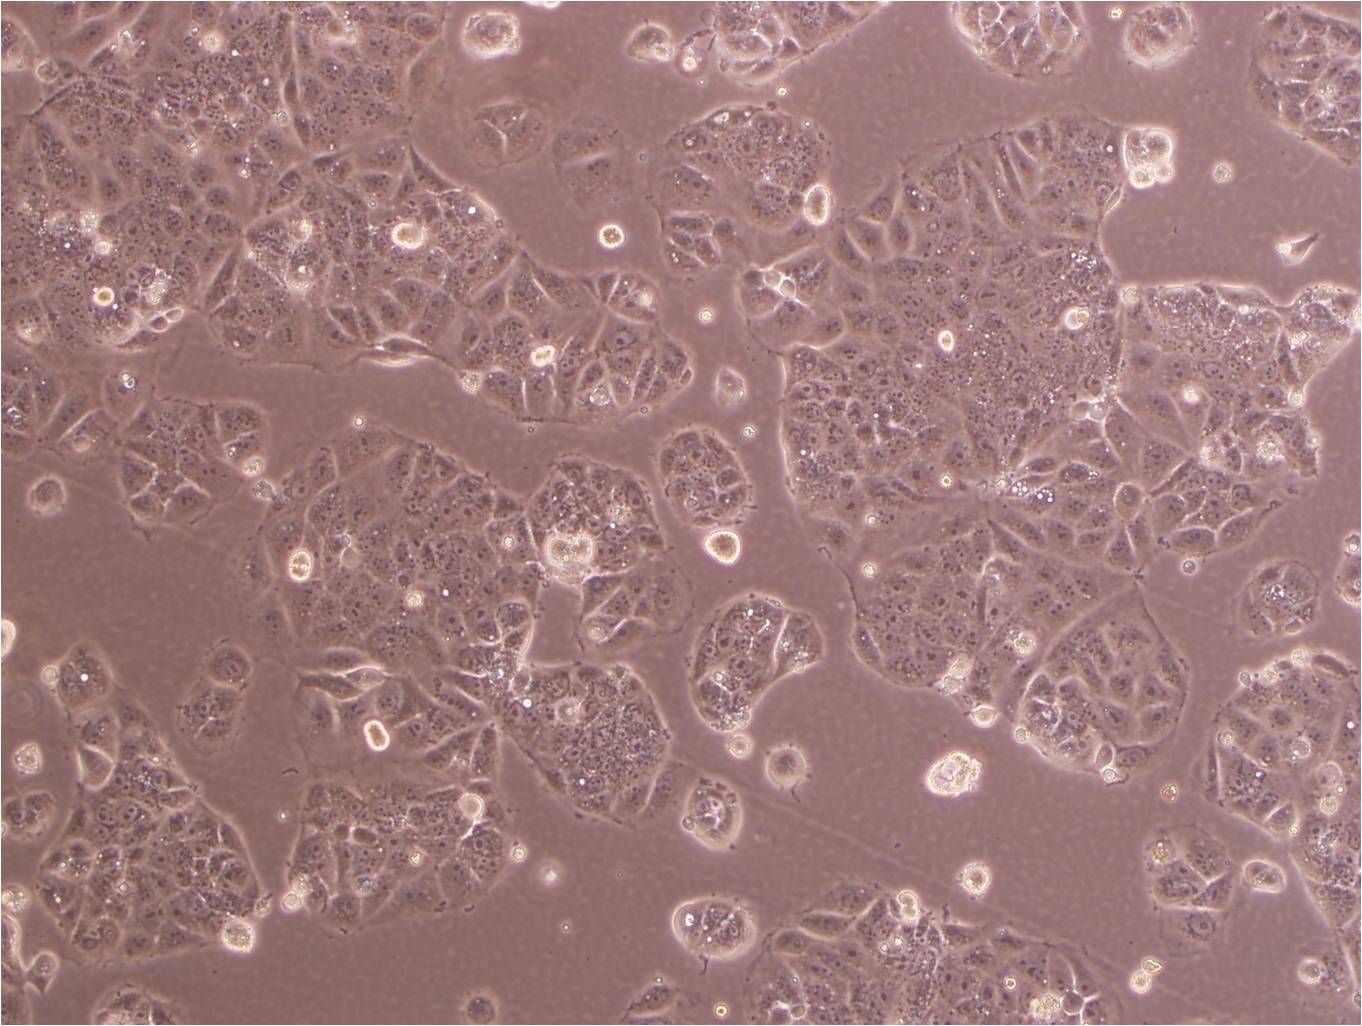 C166 epithelioid cells小鼠血管内皮细胞系,C166 epithelioid cells